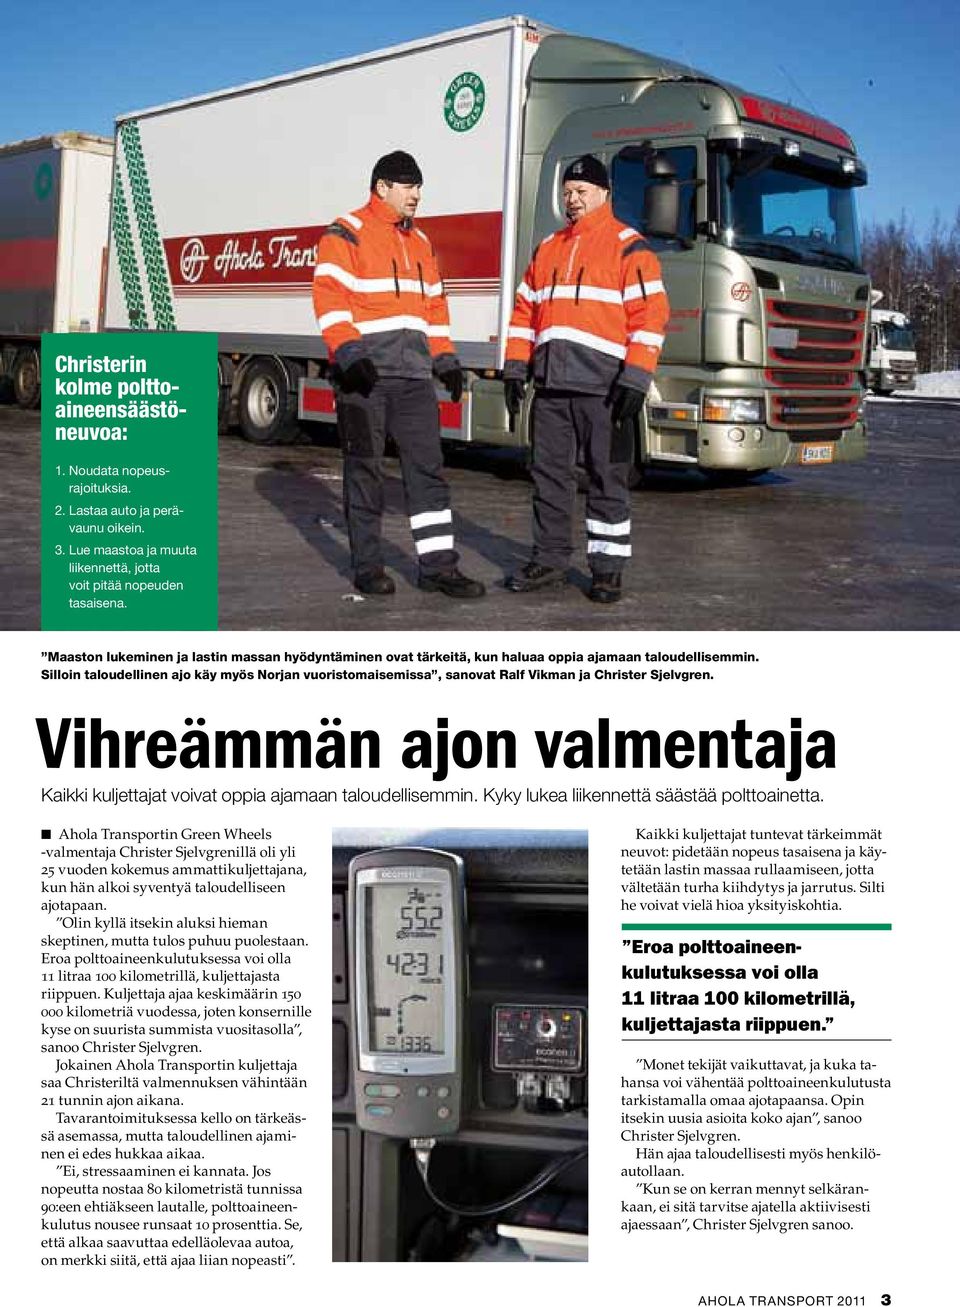 Silloin taloudellinen ajo käy myös Norjan vuoristomaisemissa, sanovat Ralf Vikman ja Christer Sjelvgren. Vihreämmän ajon valmentaja Kaikki kuljettajat voivat oppia ajamaan taloudellisemmin.